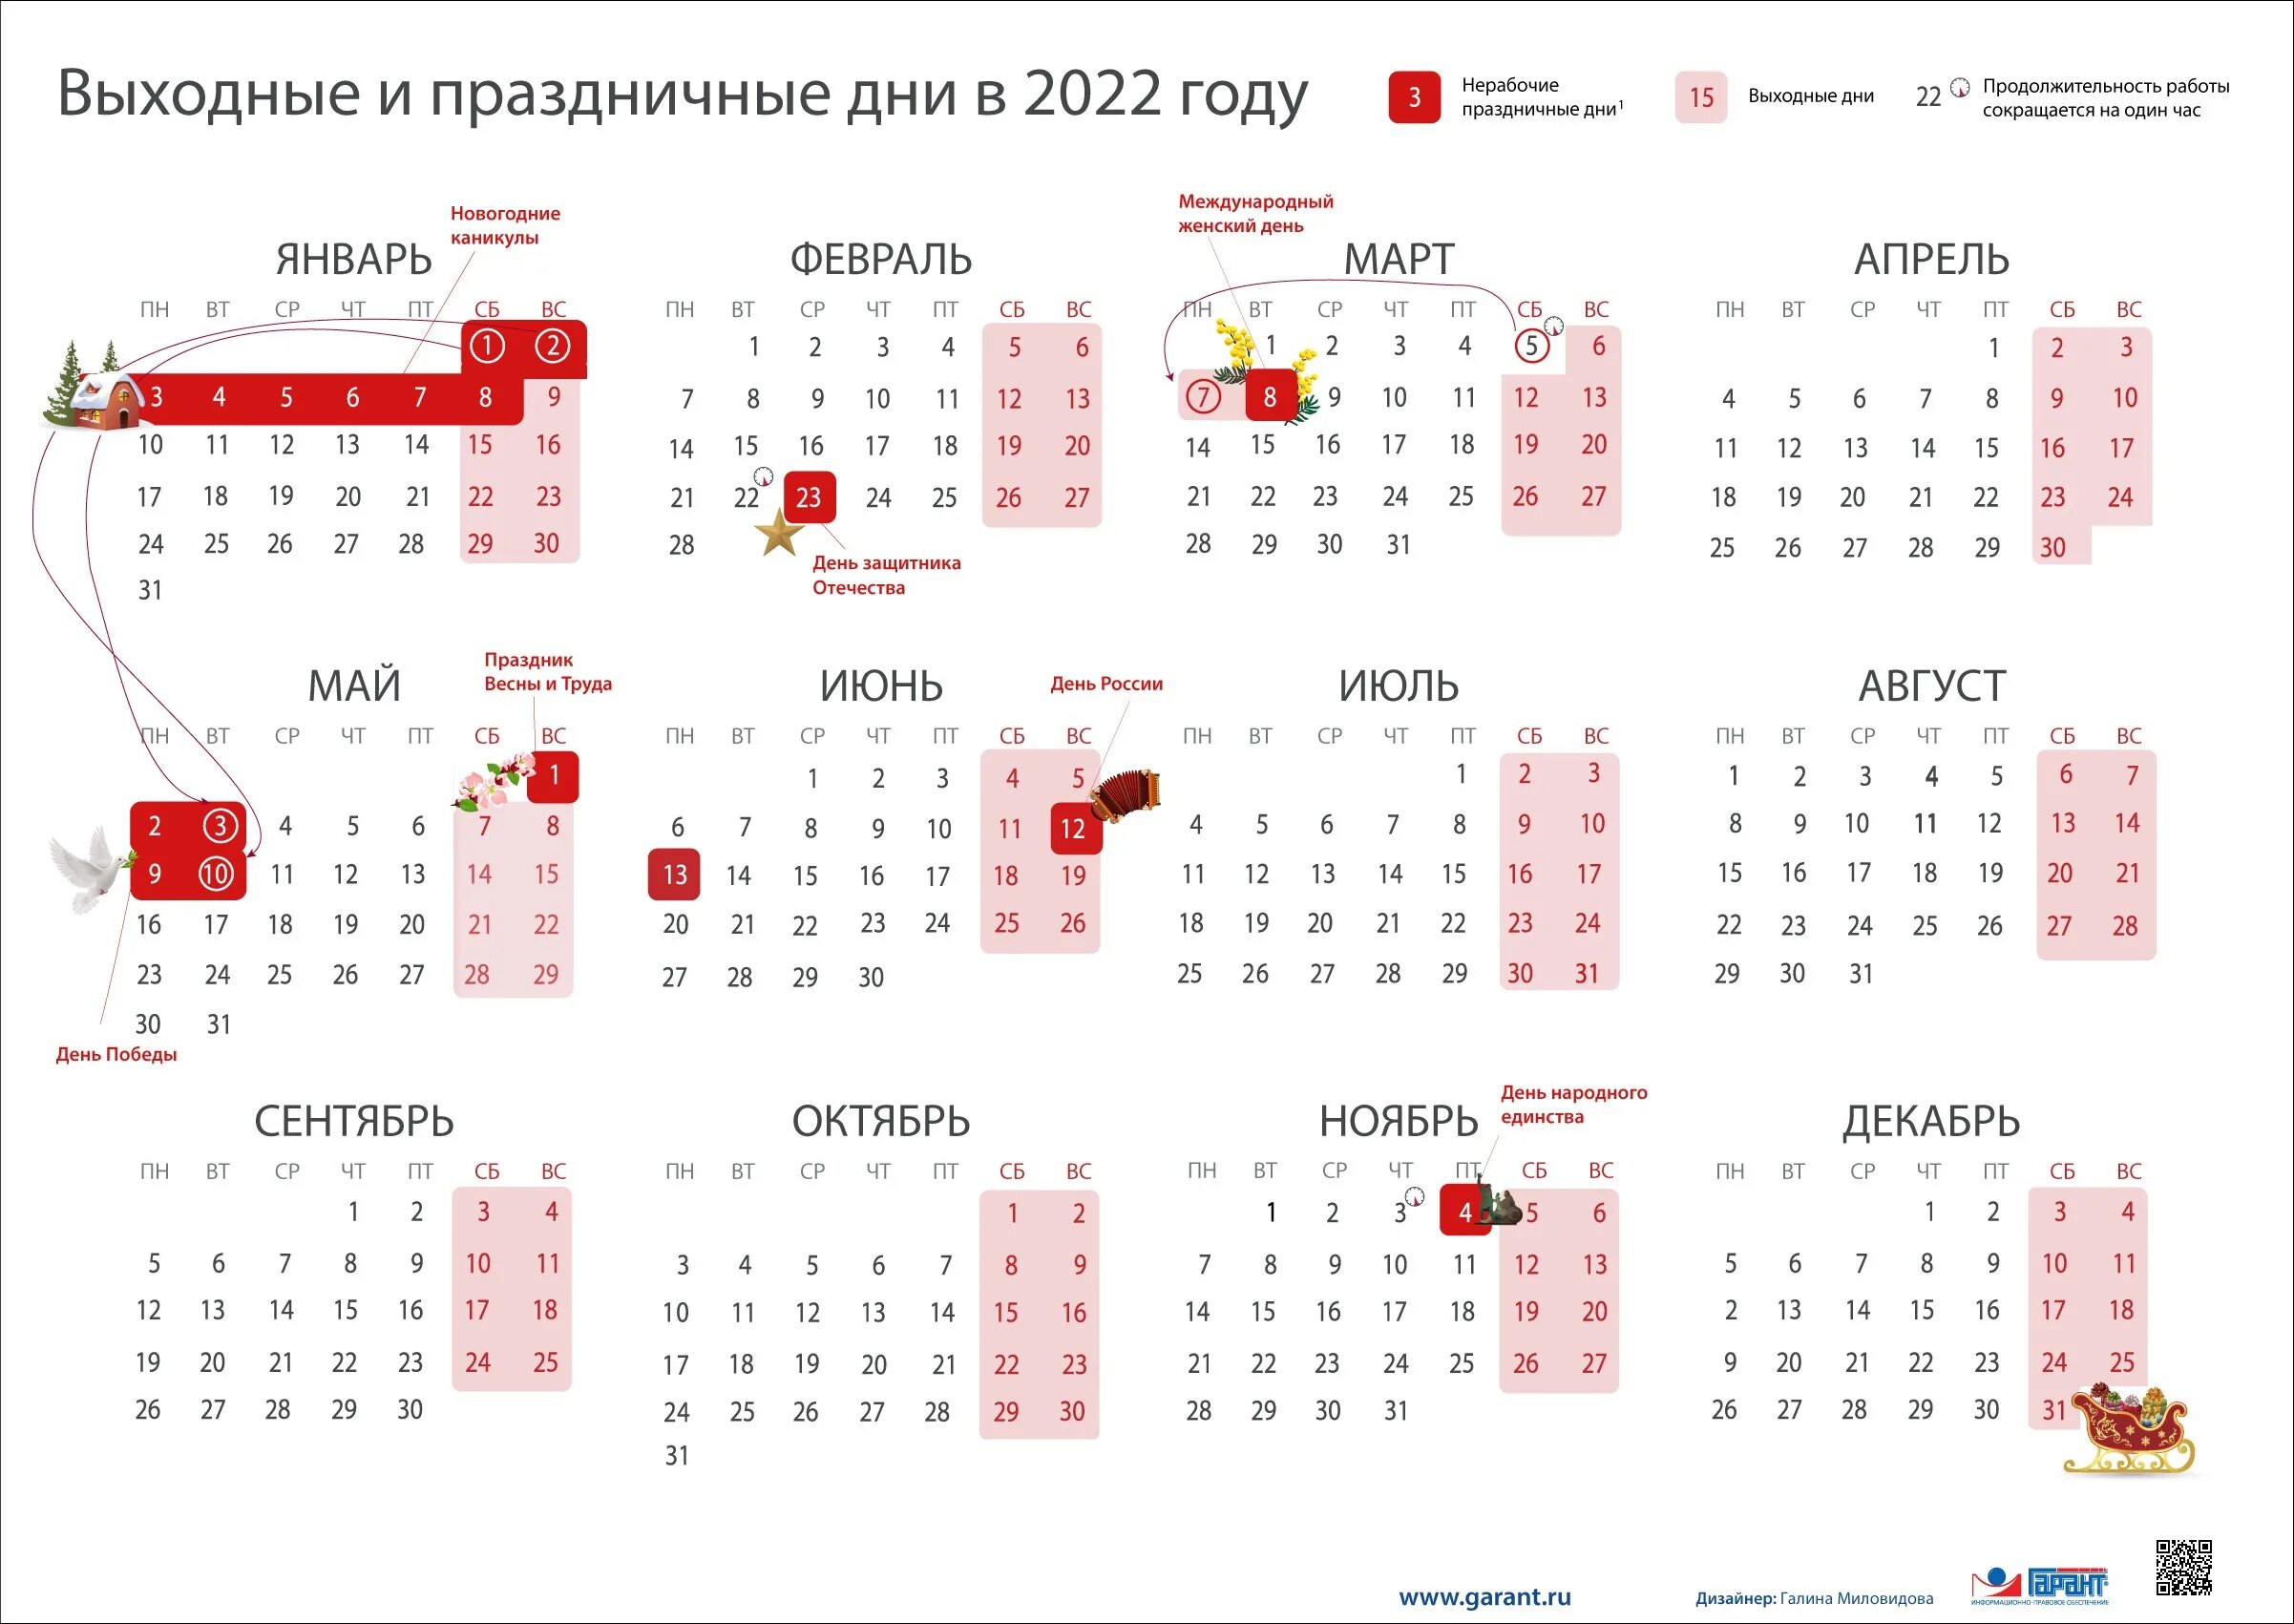 Производственный календарь 2022г. Календарь выходных и праздничных дней на 2022 год в России. Перенос праздников 2022 год утвержденный правительством РФ. Выходные и праздники в 2022 года в России нерабочие дни календарь. Выходные и праздничные дни в феврале 2022 года в России.